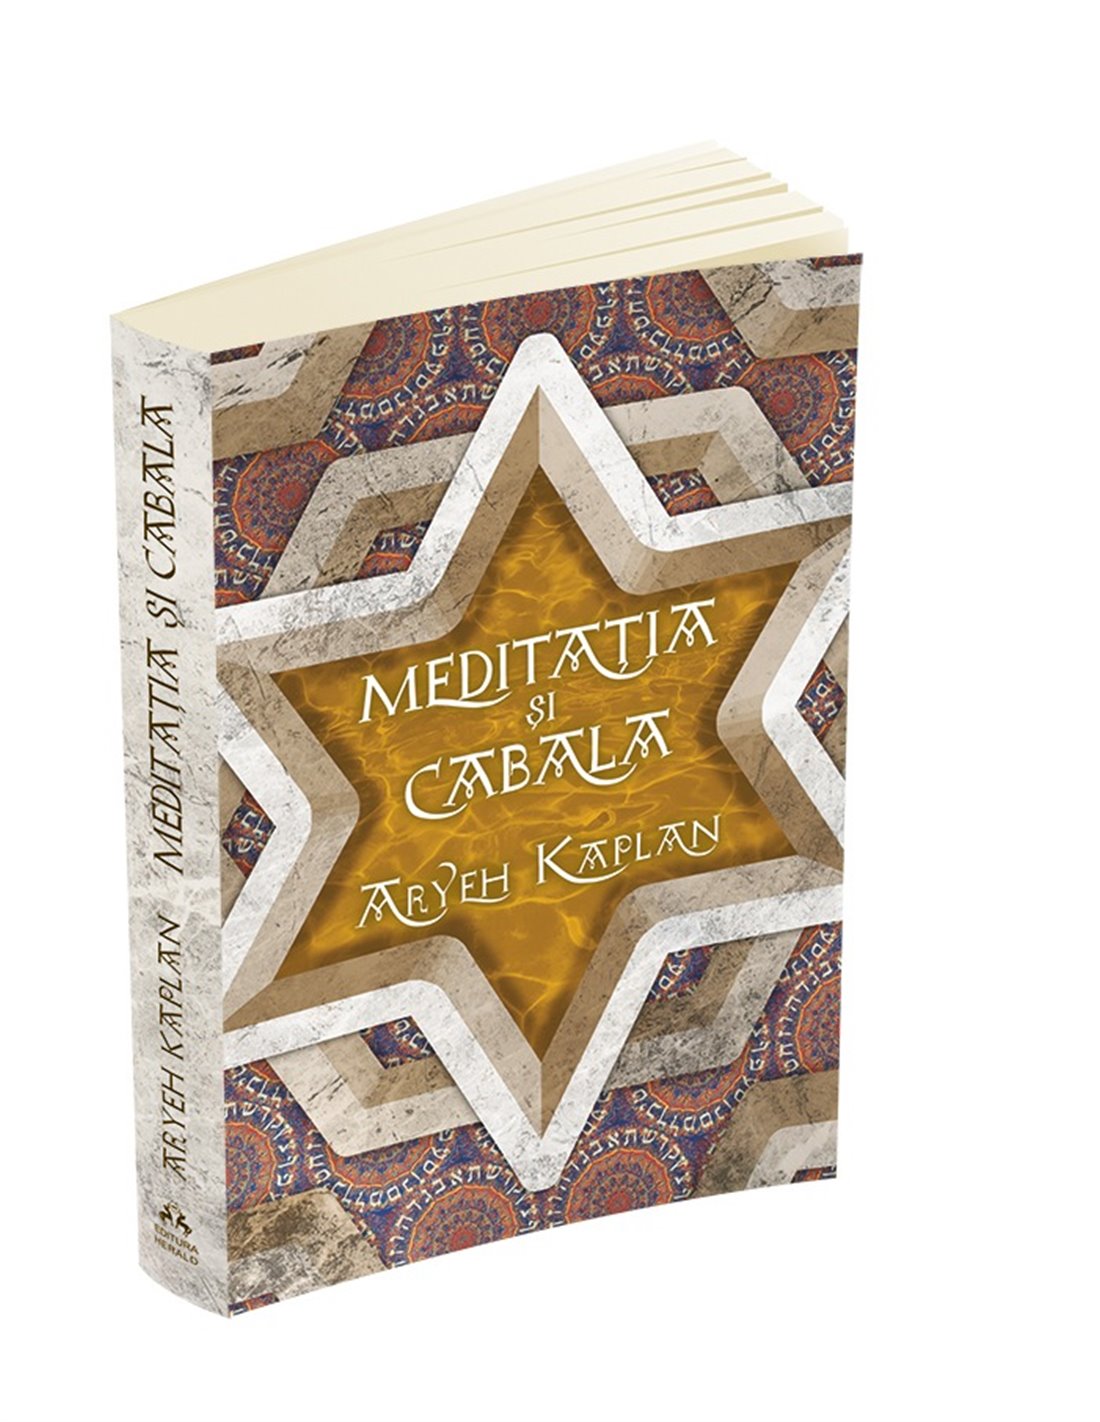 Meditatia si Cabala - Aryeh Kaplan | Editura Herald